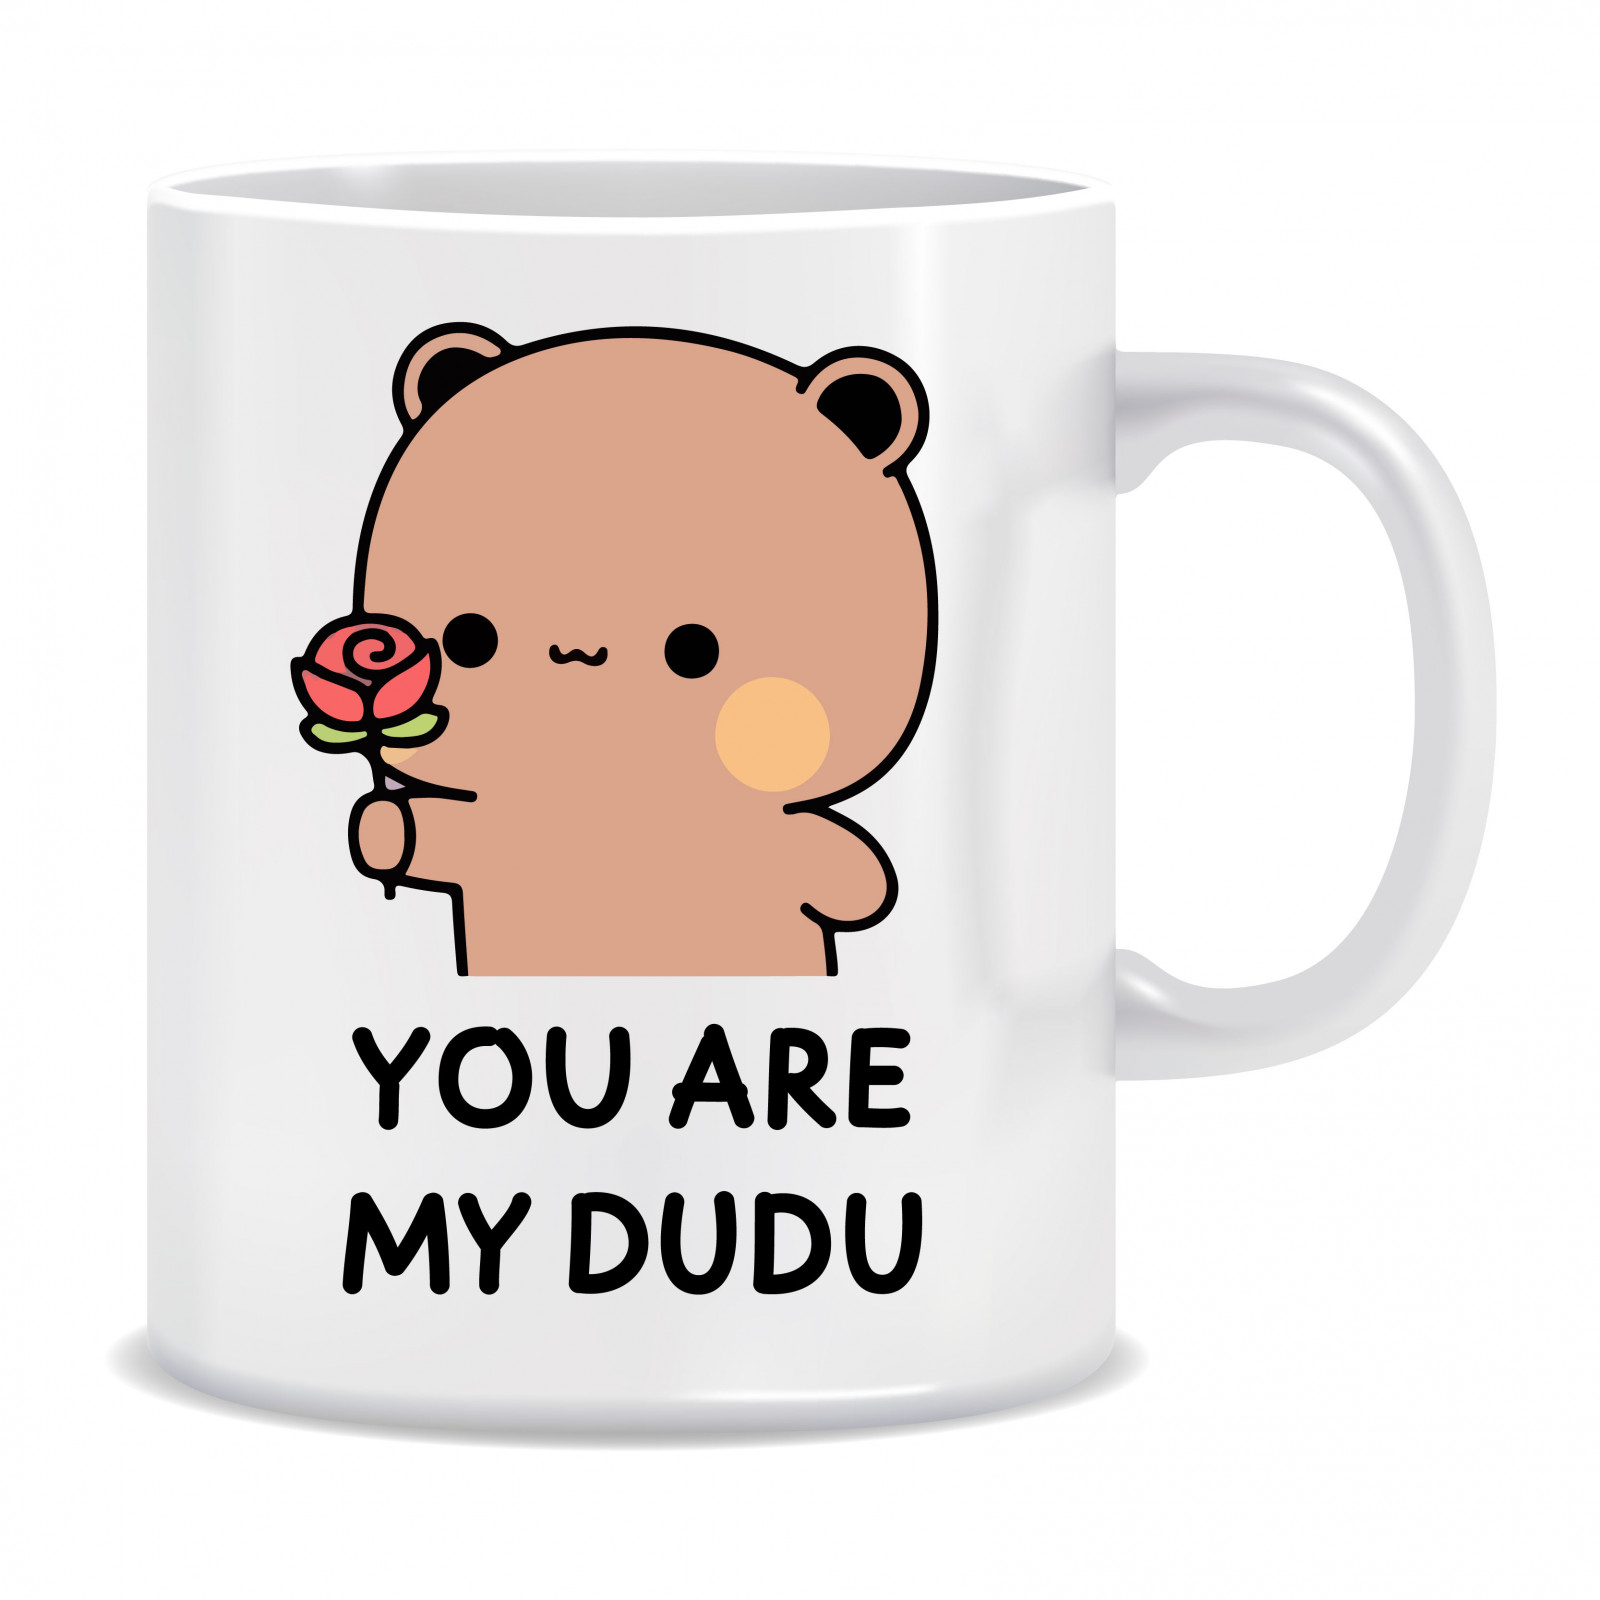 Kubek Personalizowany Bubu & Dudu (You are my) - bubududu.pl